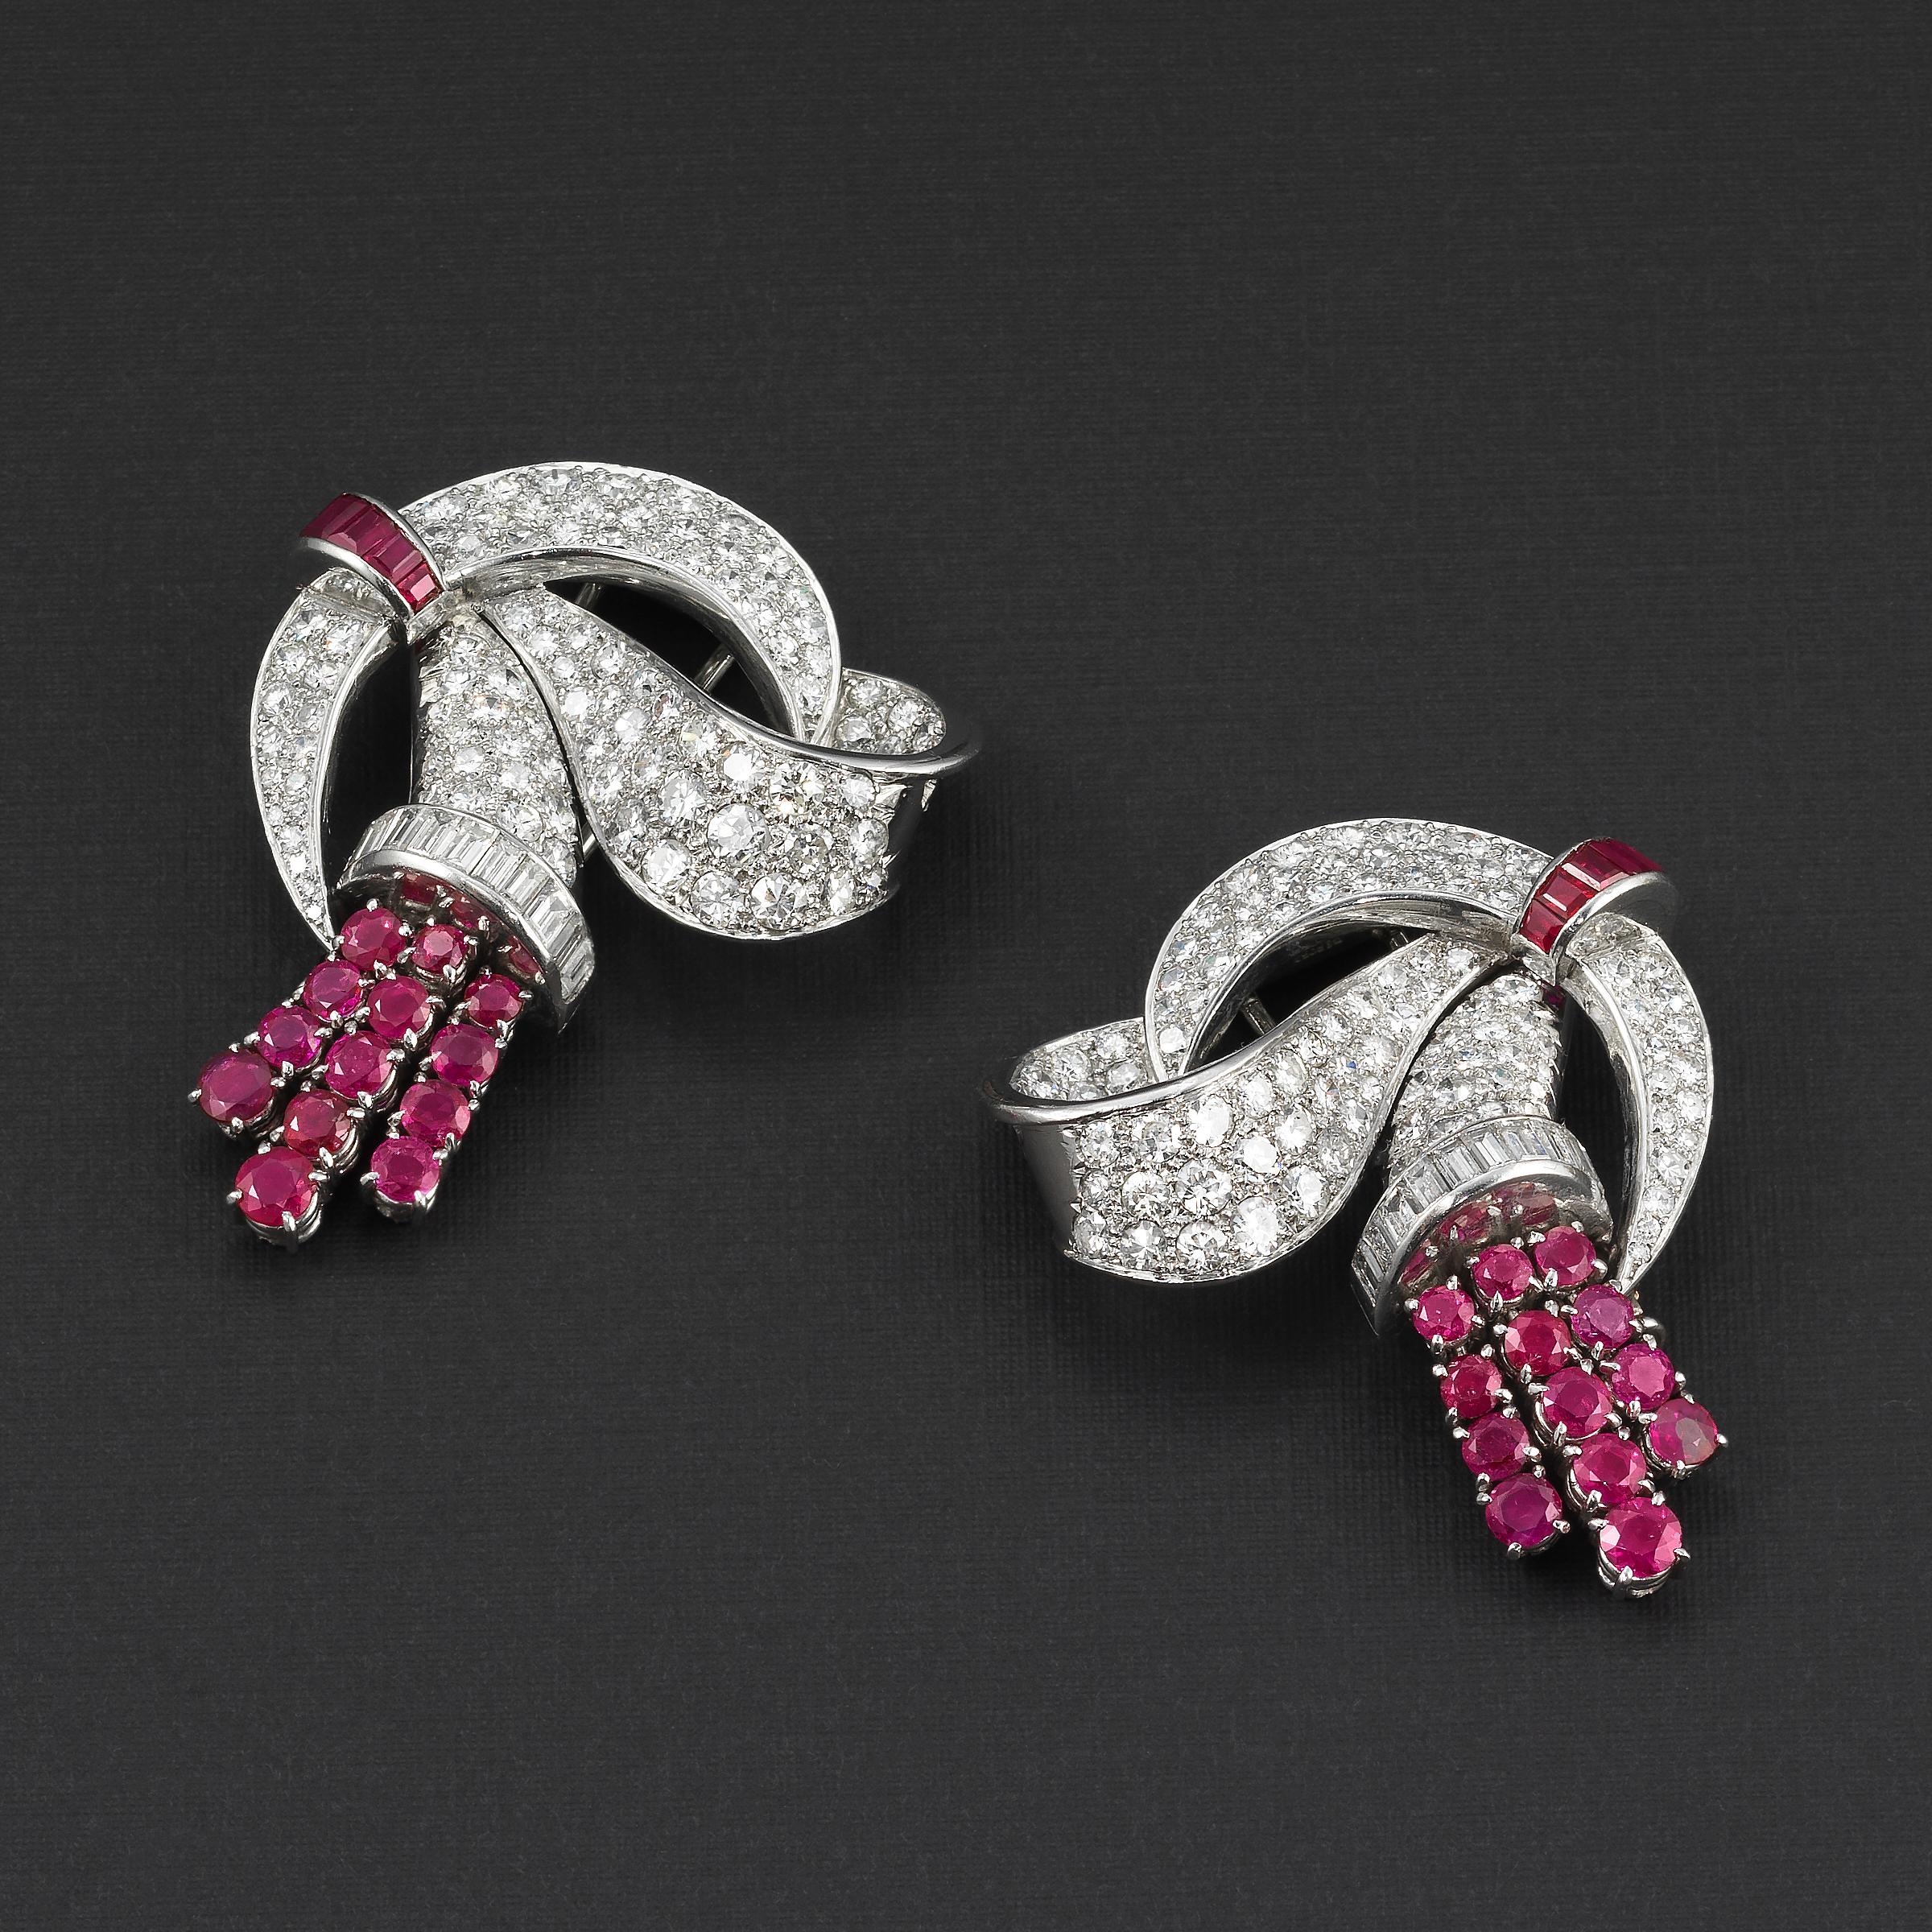 Exceptionnelle paire de broches clips LaCloche Frères (convertibles en boucles d'oreilles) de la période Art Déco du début des années 1930, avec des diamants et des rubis de Birmanie sertis en platine et en or blanc 18K :
- Une création Art Déco